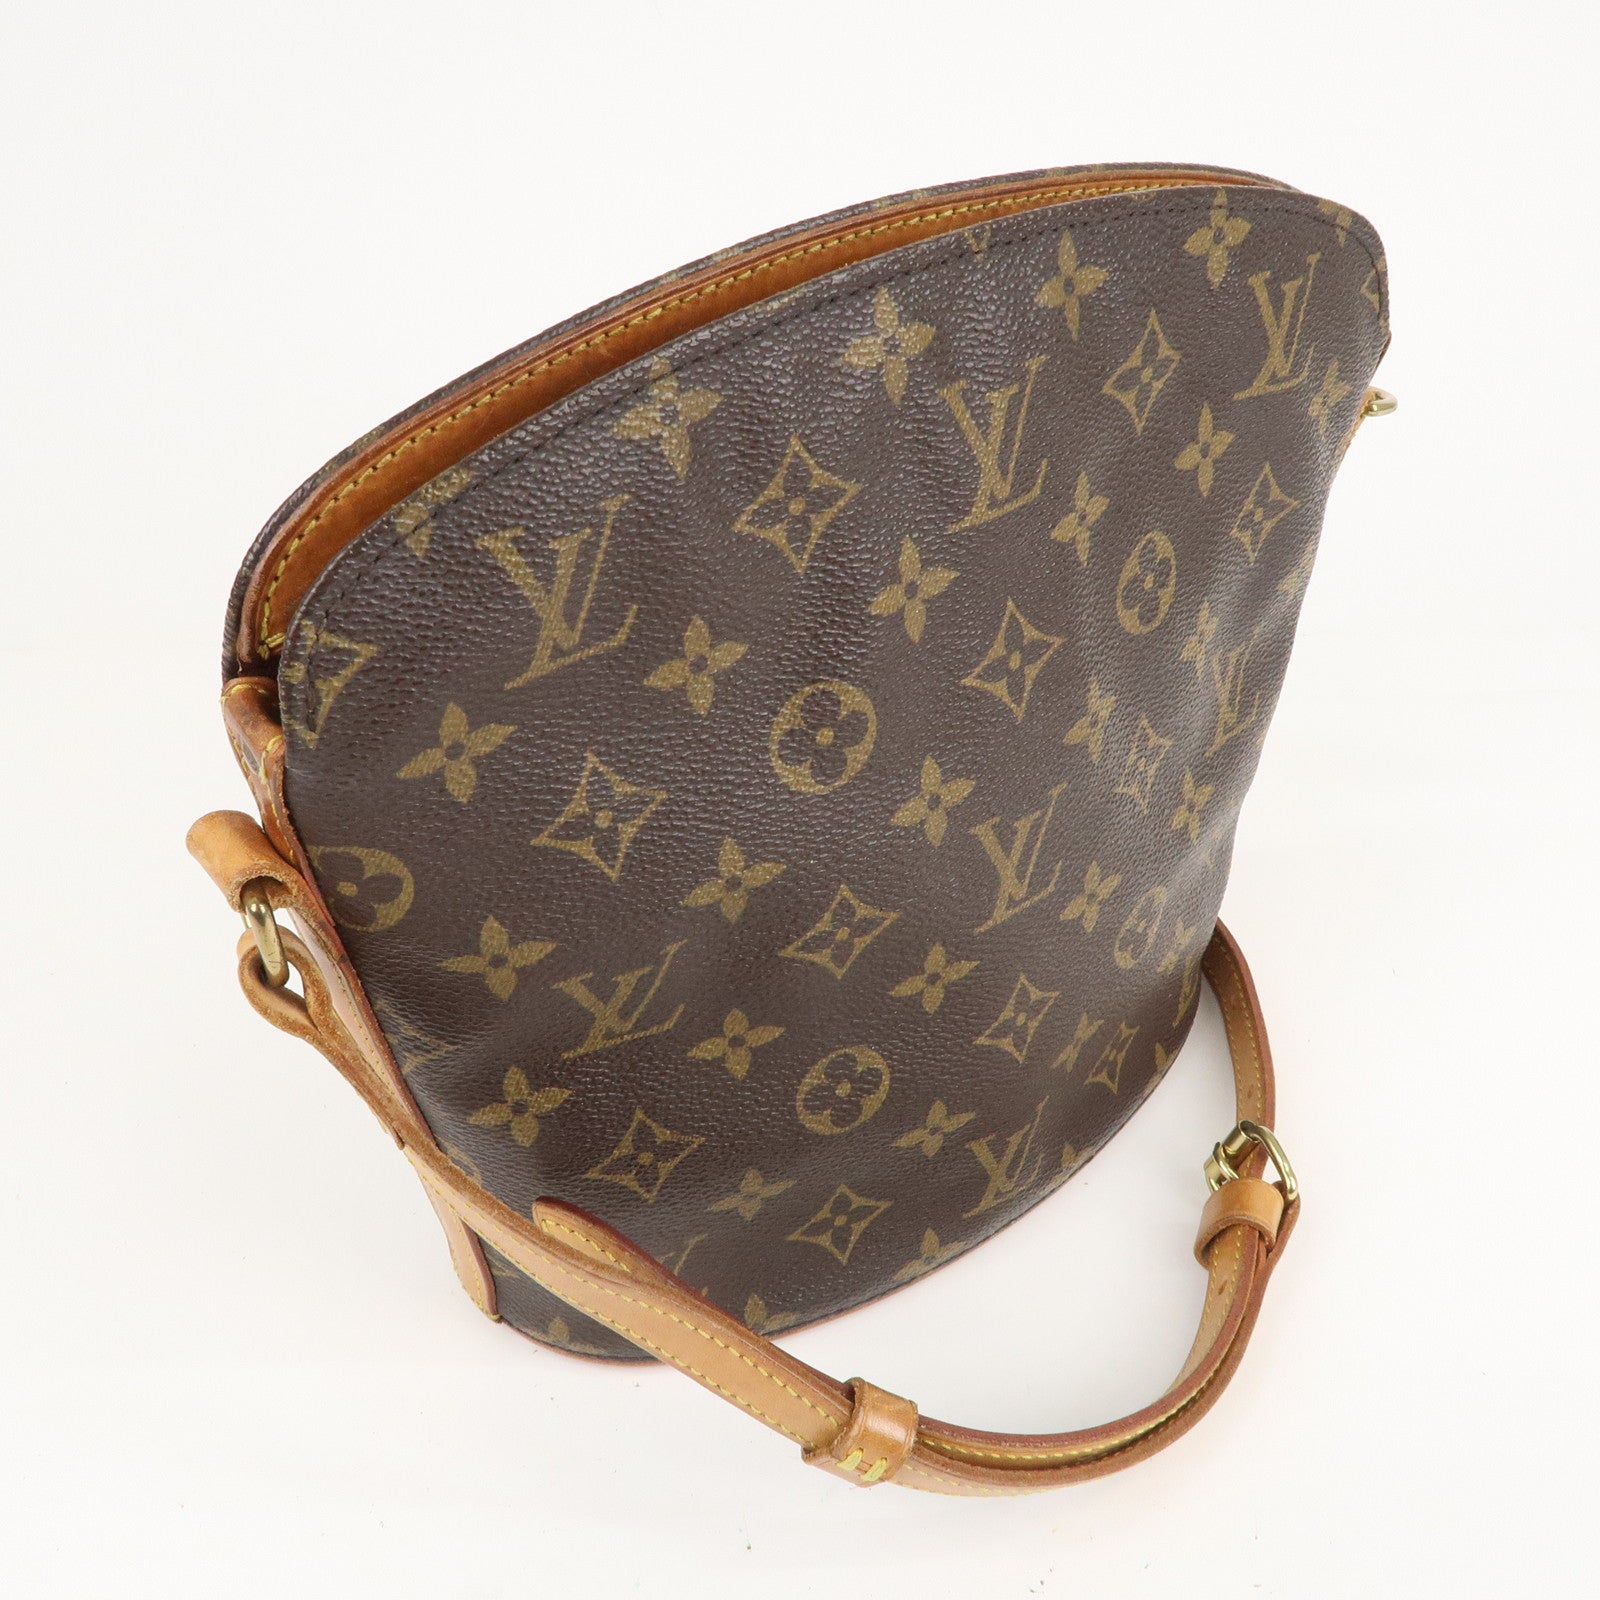 Louis+Vuitton+Drouot+Shoulder+Bag+Brown+Canvas+Monogram for sale online